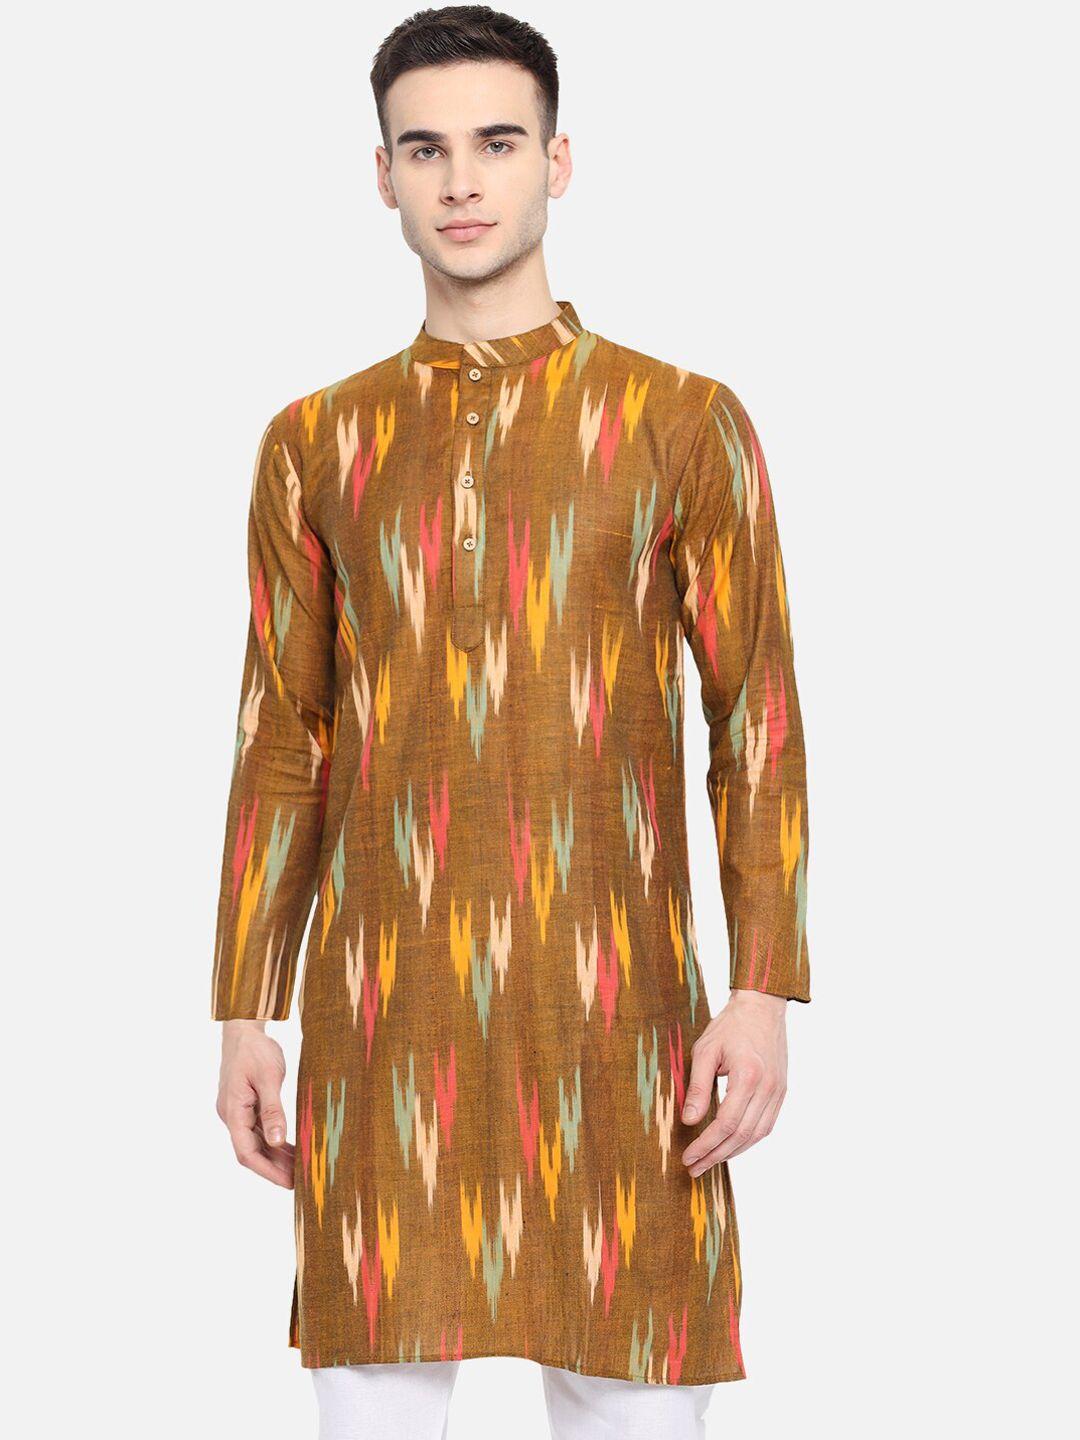 vastraa fusion ethnic motifs woven design ikat pure cotton straight kurta with pyjamas